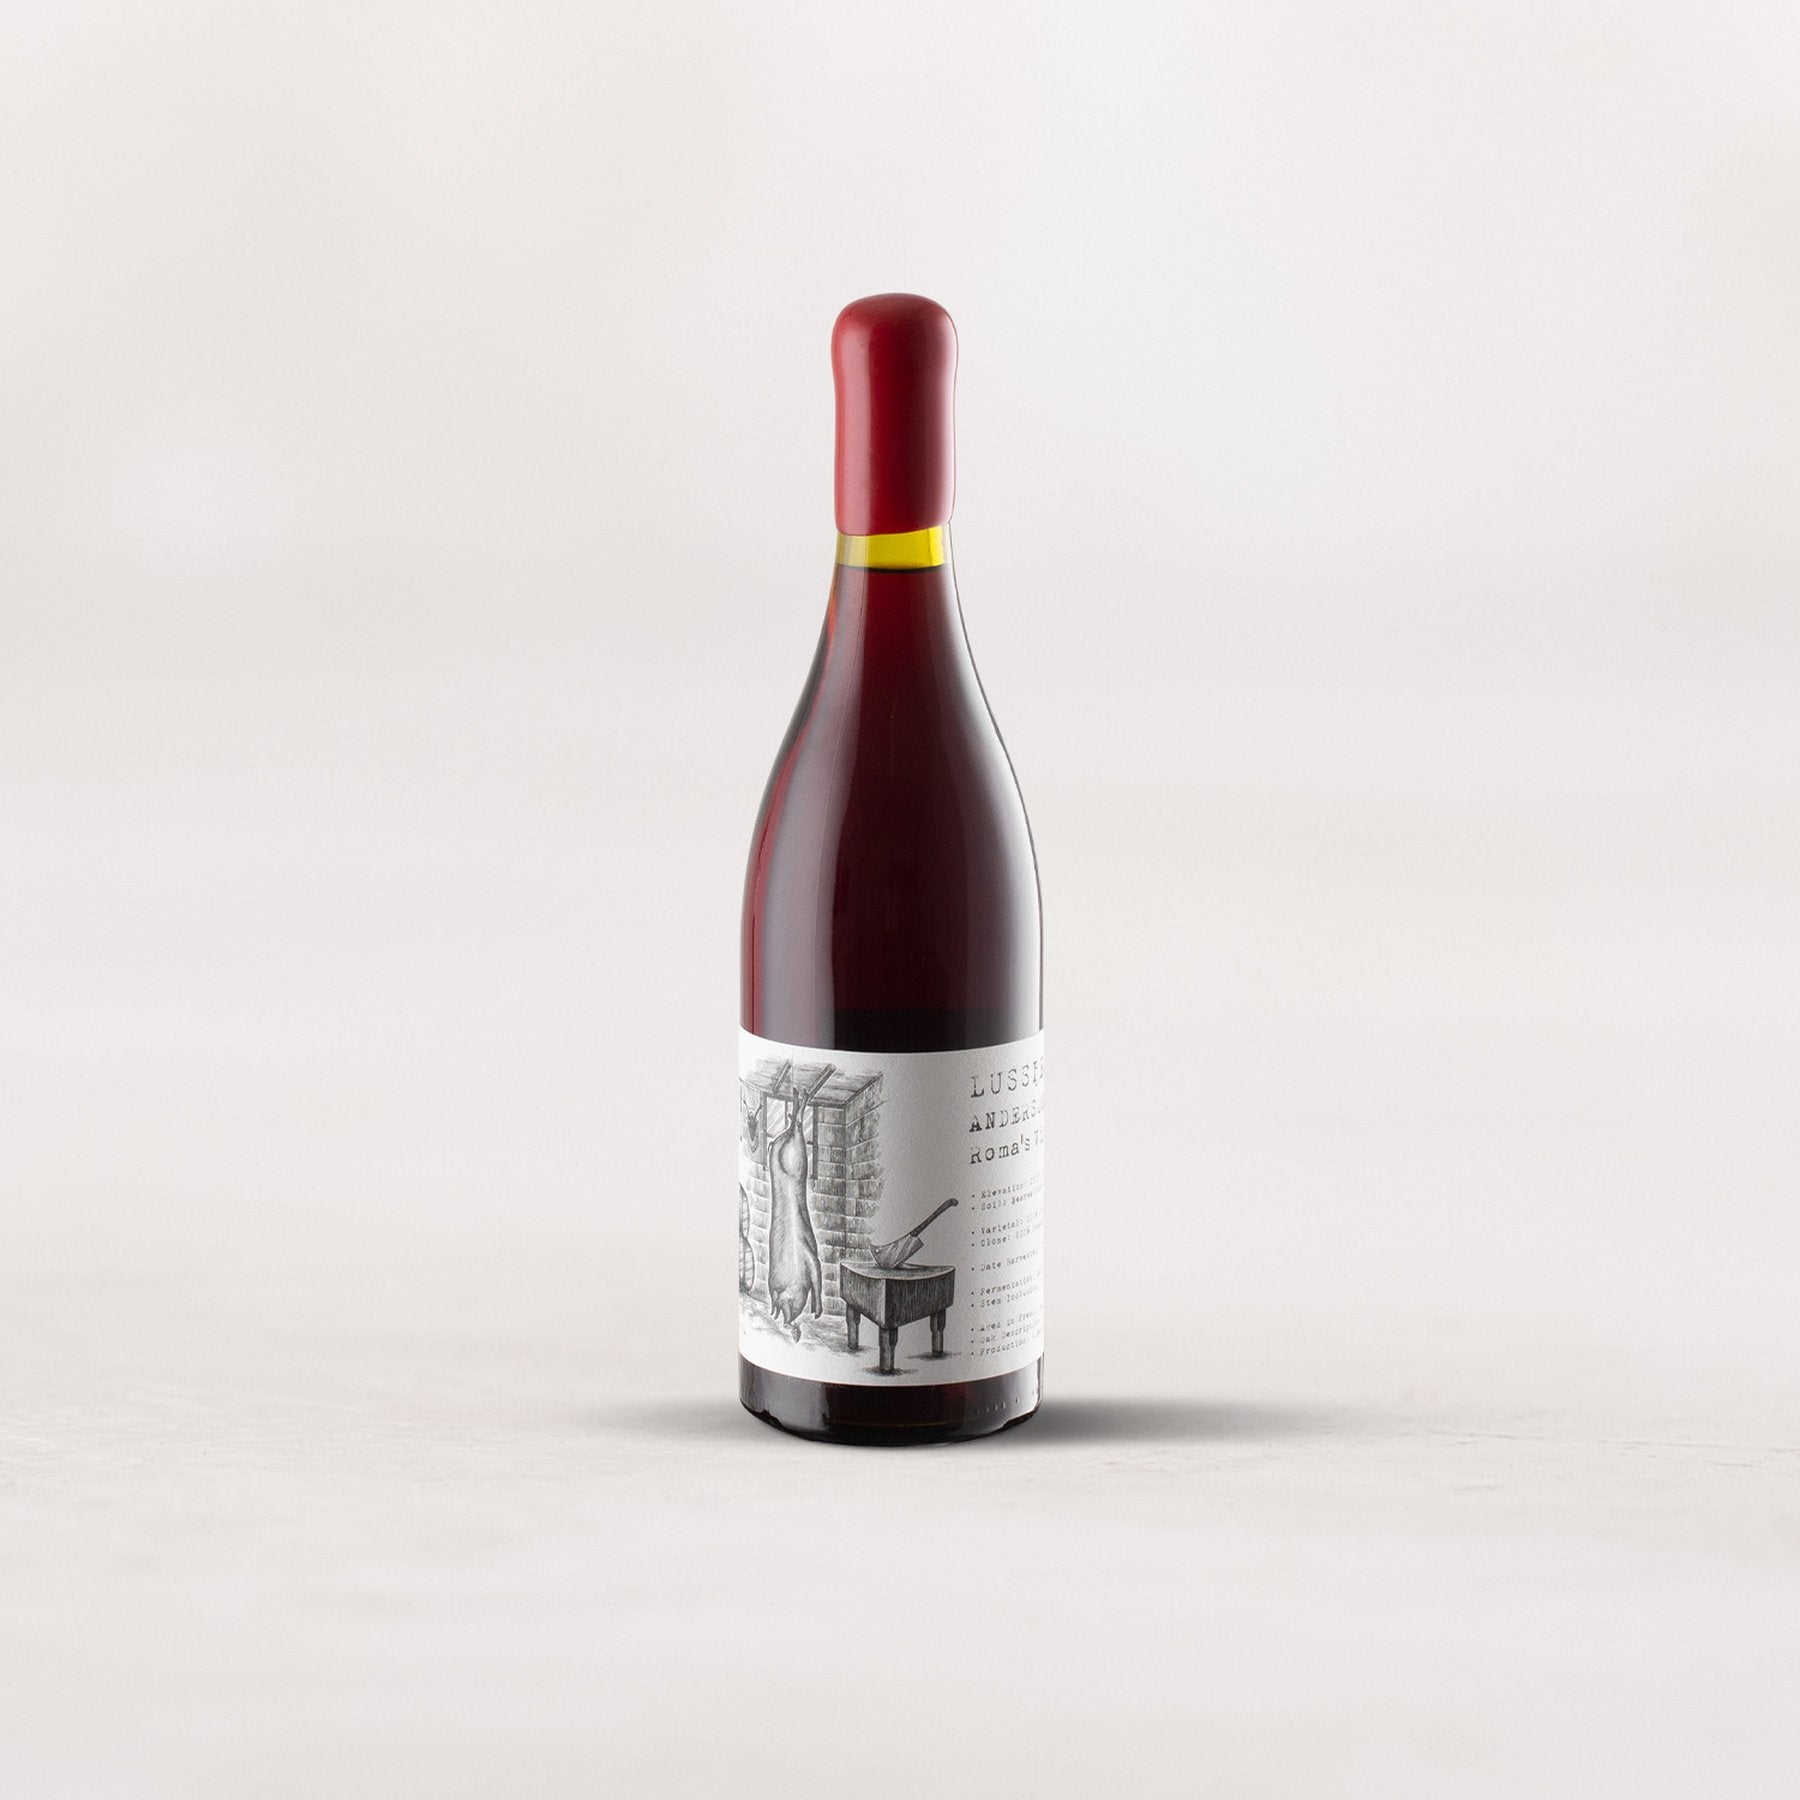 Lussier, “Roma’s Vineyard” Pinot Noir